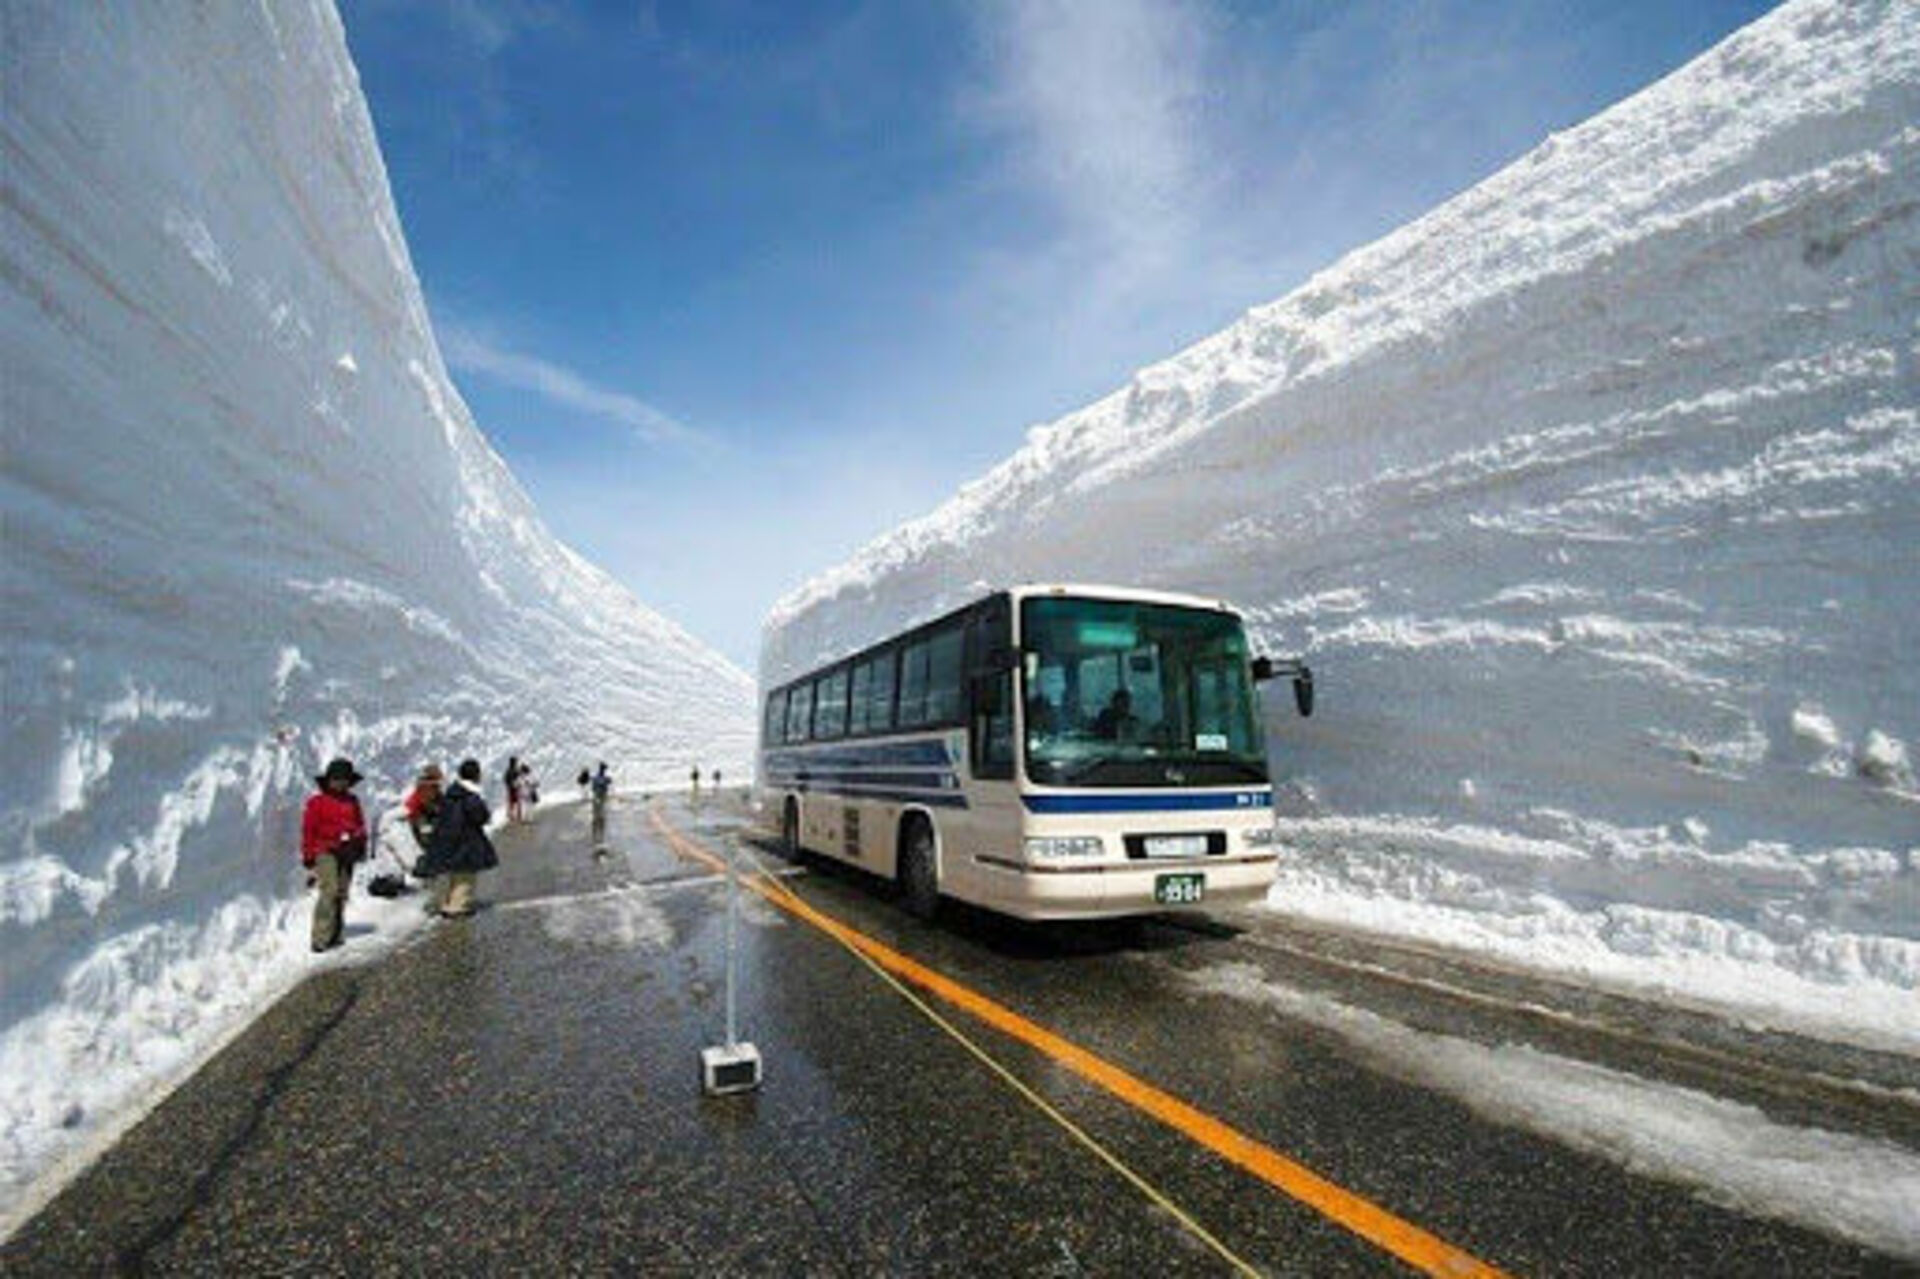 Самый большой сугроб. Татэяма Куробэ. Дорога Татэяма Куробэ, Япония. Tateyama Kurobe Alpine. Снежный коридор Татэяма Куробэ в Японии.